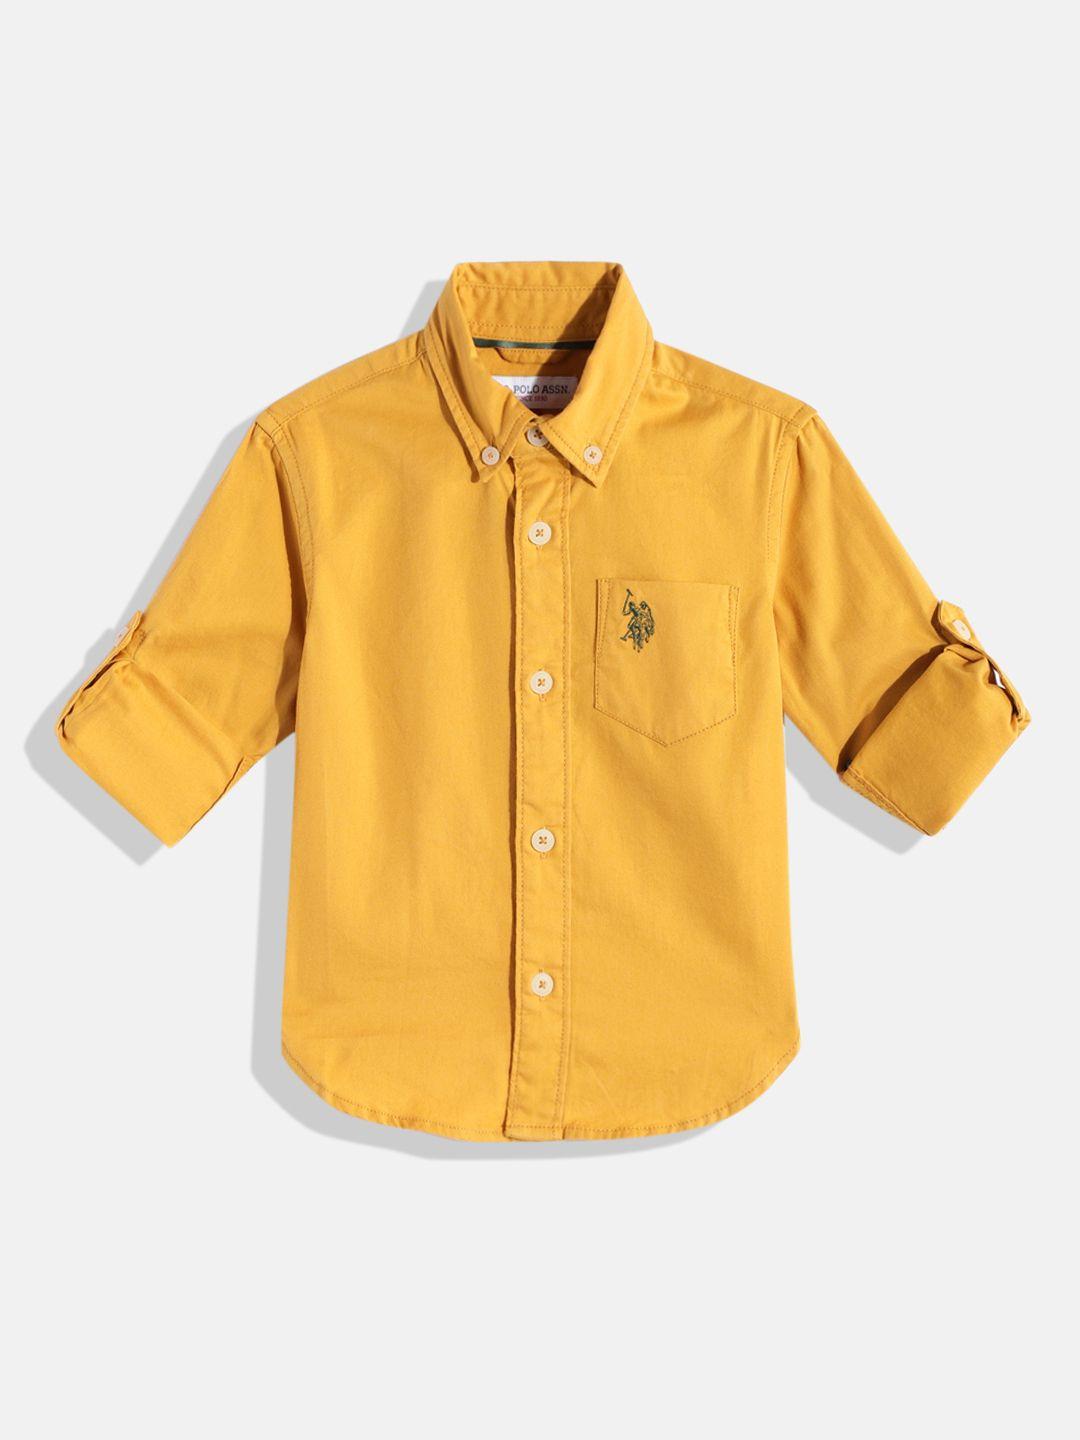 u.s. polo assn. kids boys yellow pure cotton casual shirt